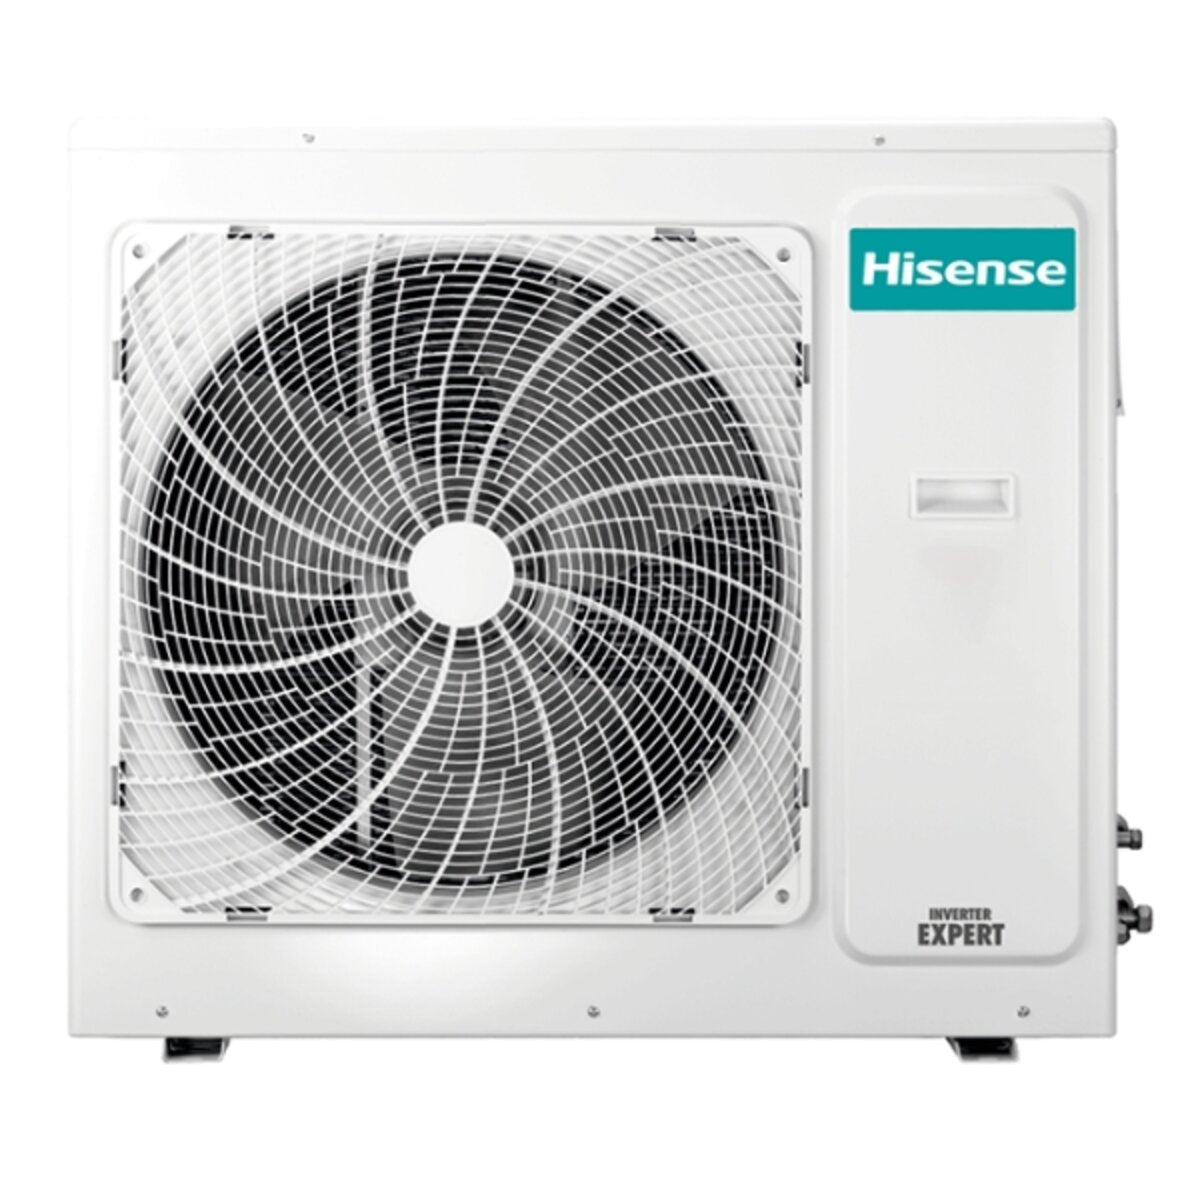 Hisense Hi-Comfort quadri split air conditioner 12000+12000+12000+12000 BTU inverter A++ wifi outdoor unit 10.0 kW